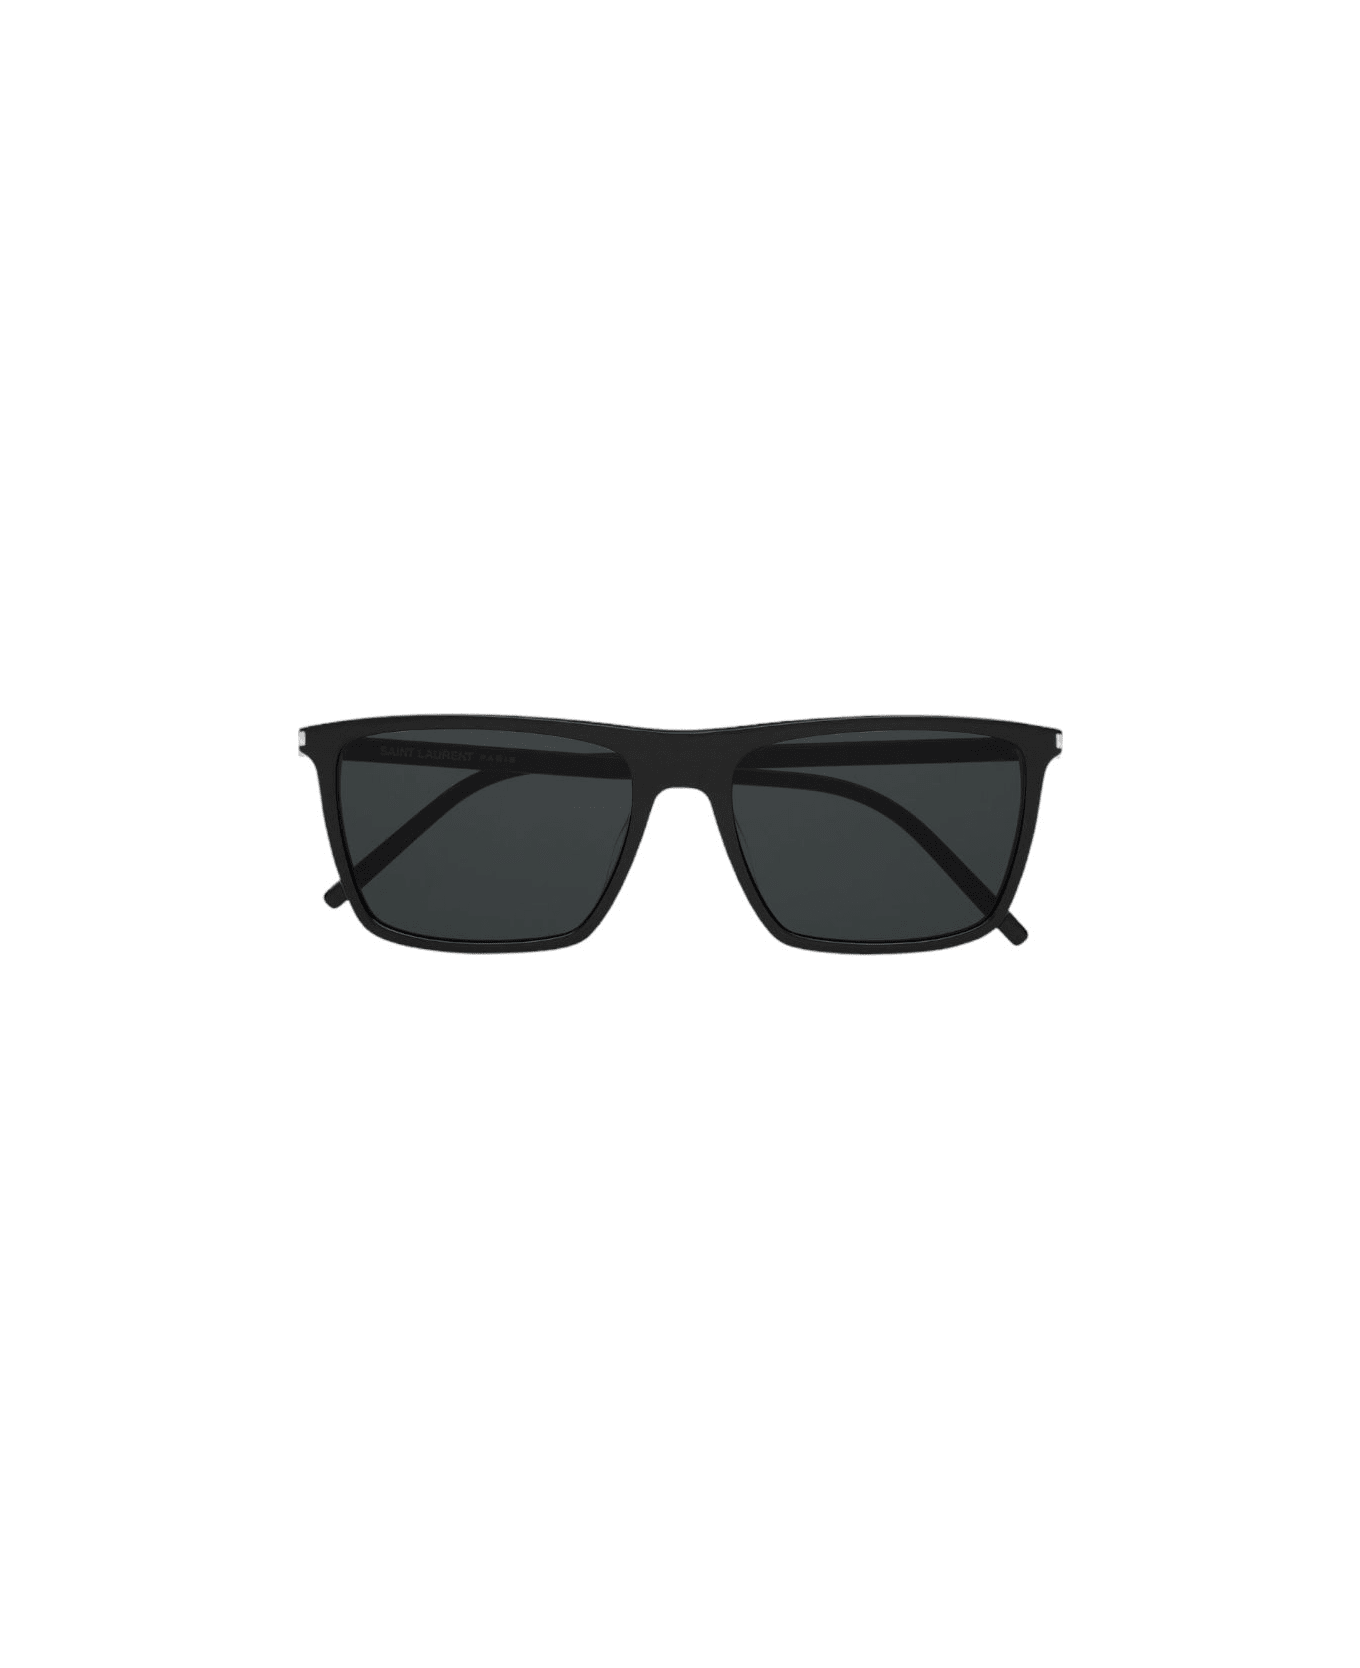 Saint Laurent Eyewear Sl 668 - Black Sunglasses サングラス